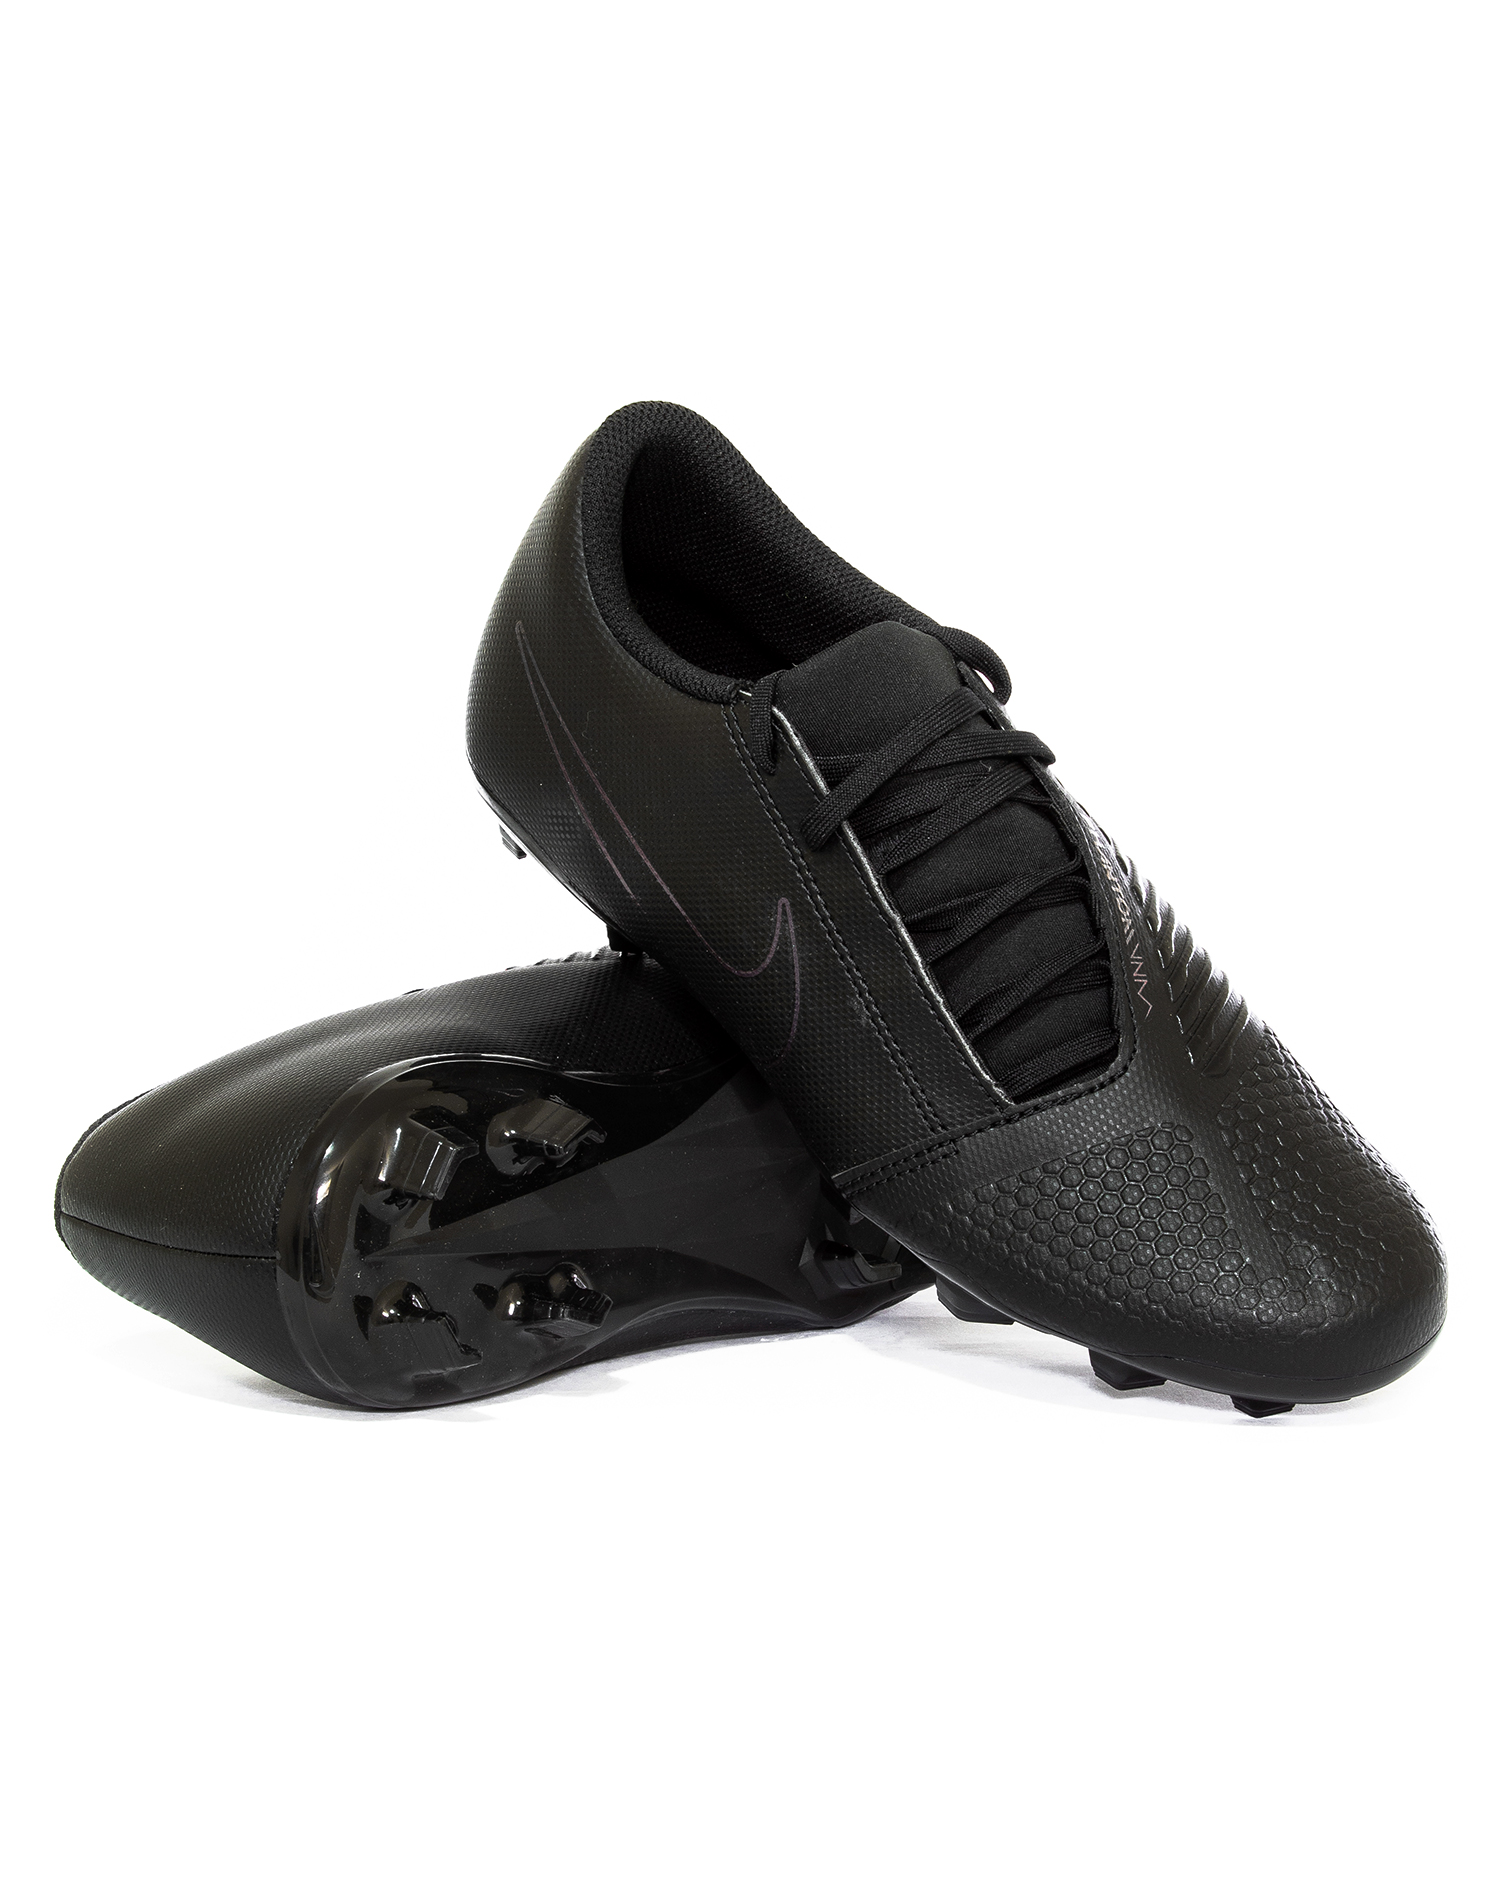 Cuadrante Desarrollar Ver insectos Zapatos de Futbol Nike Phantom Venom Club FG - Golero Sport